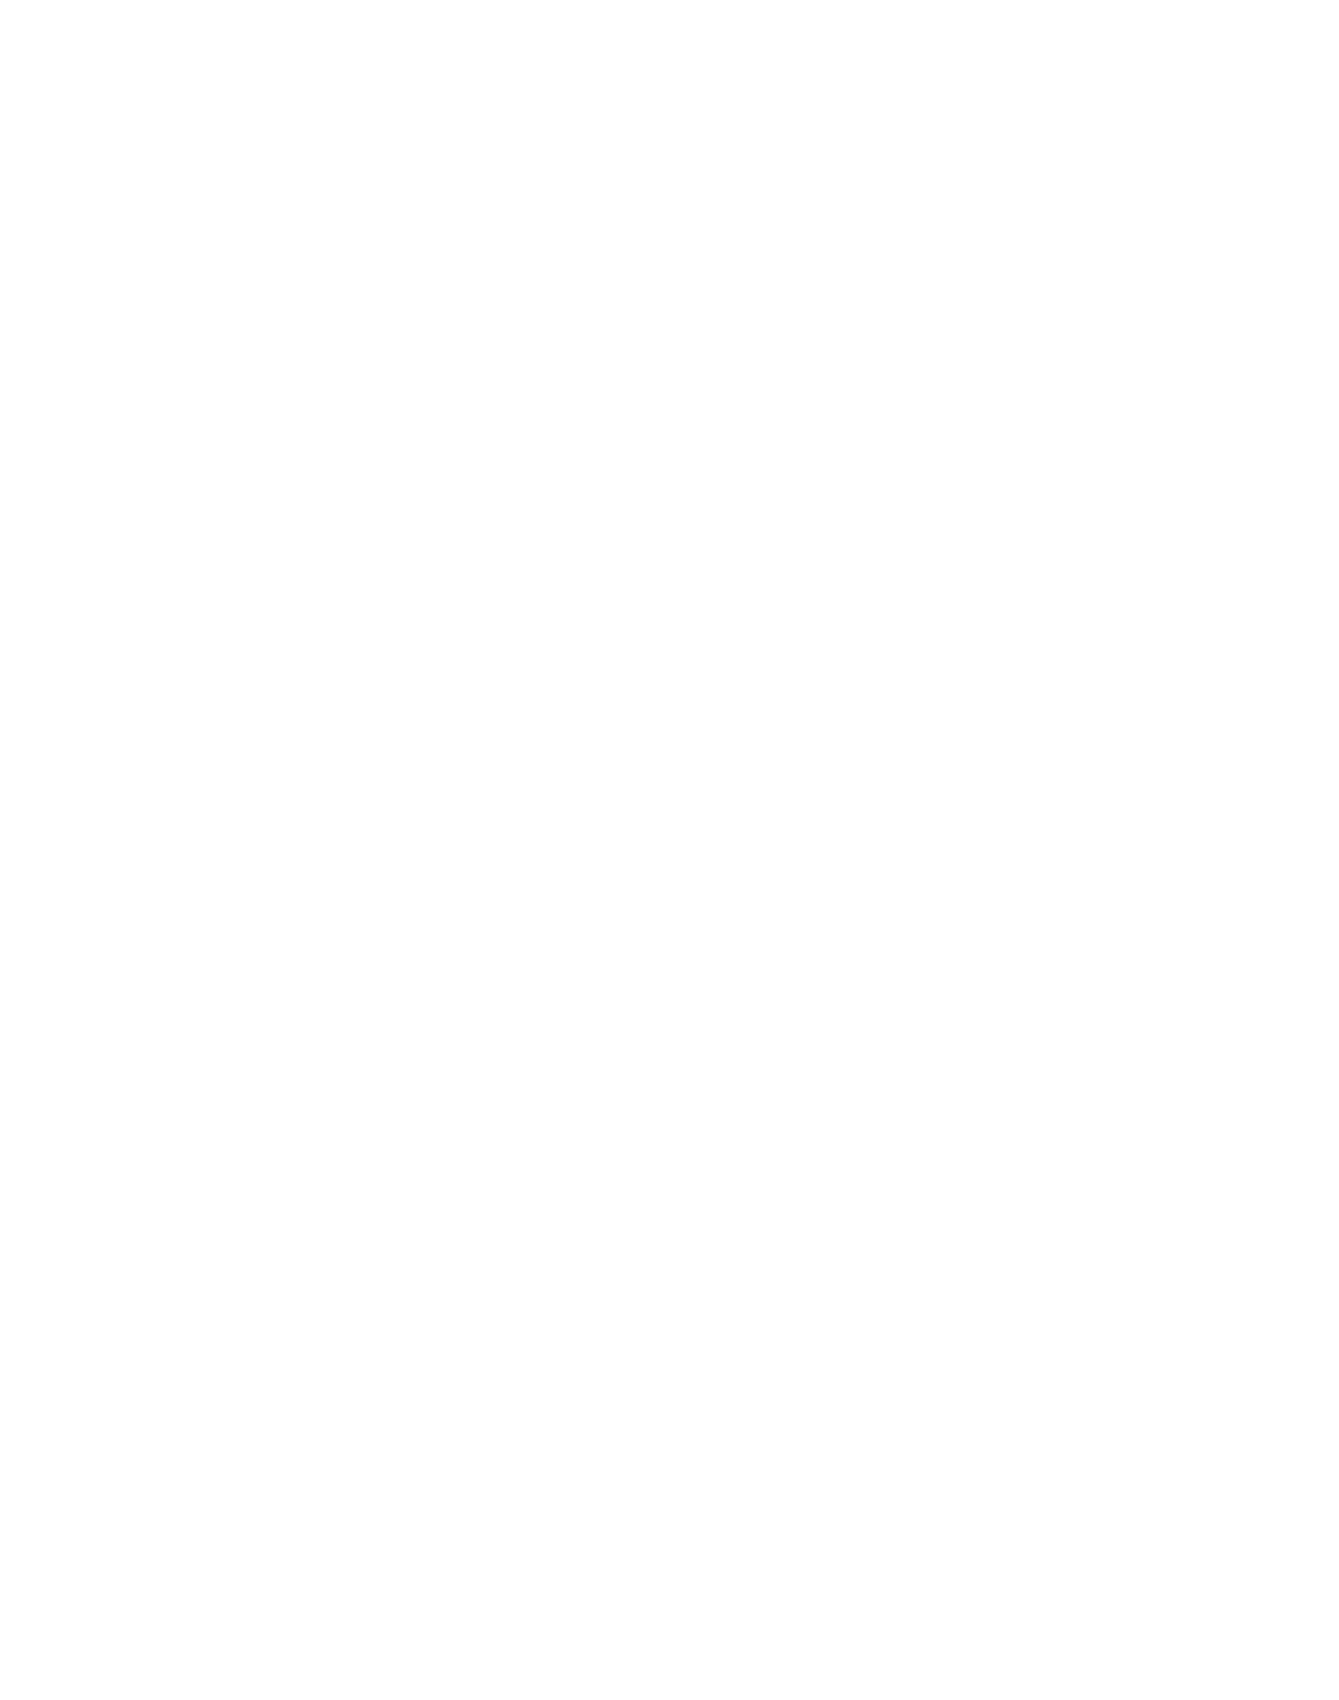 COLOPL logo for dark backgrounds (transparent PNG)